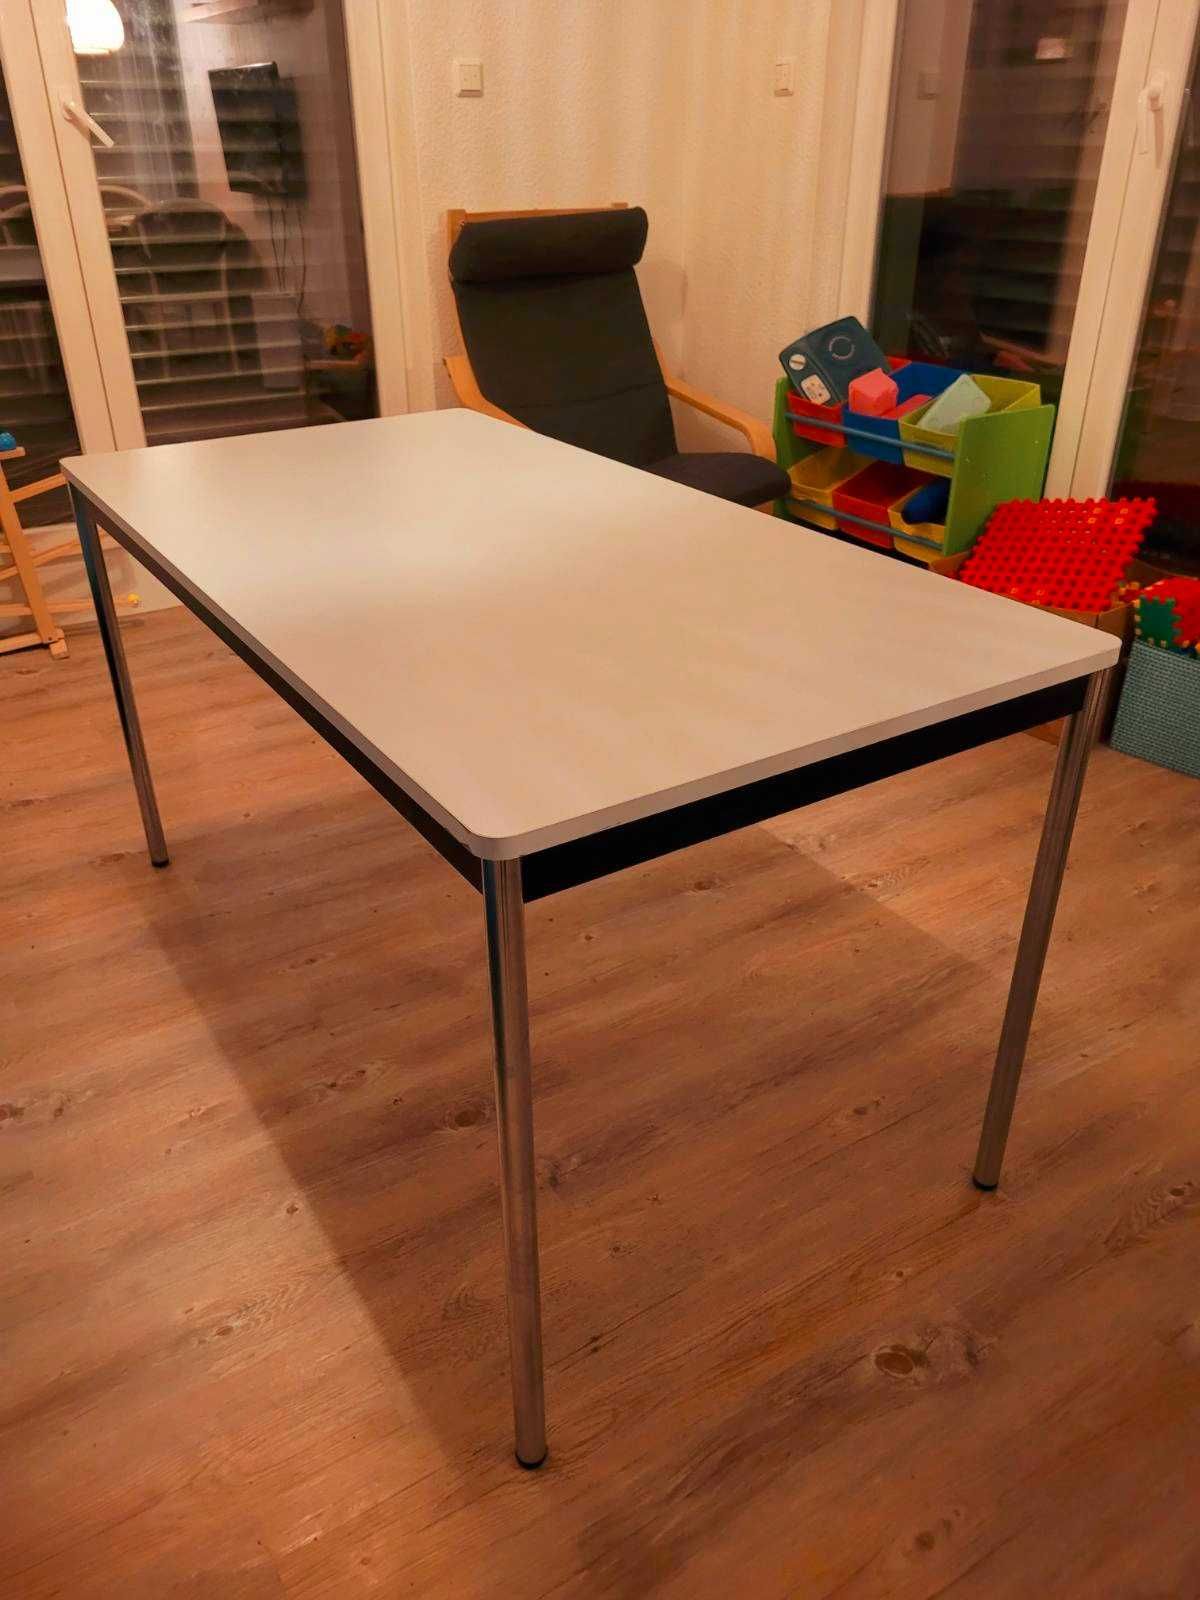 Stół biurko ładny stan nogi z nierdzewki szare łagodne rogi stan db+